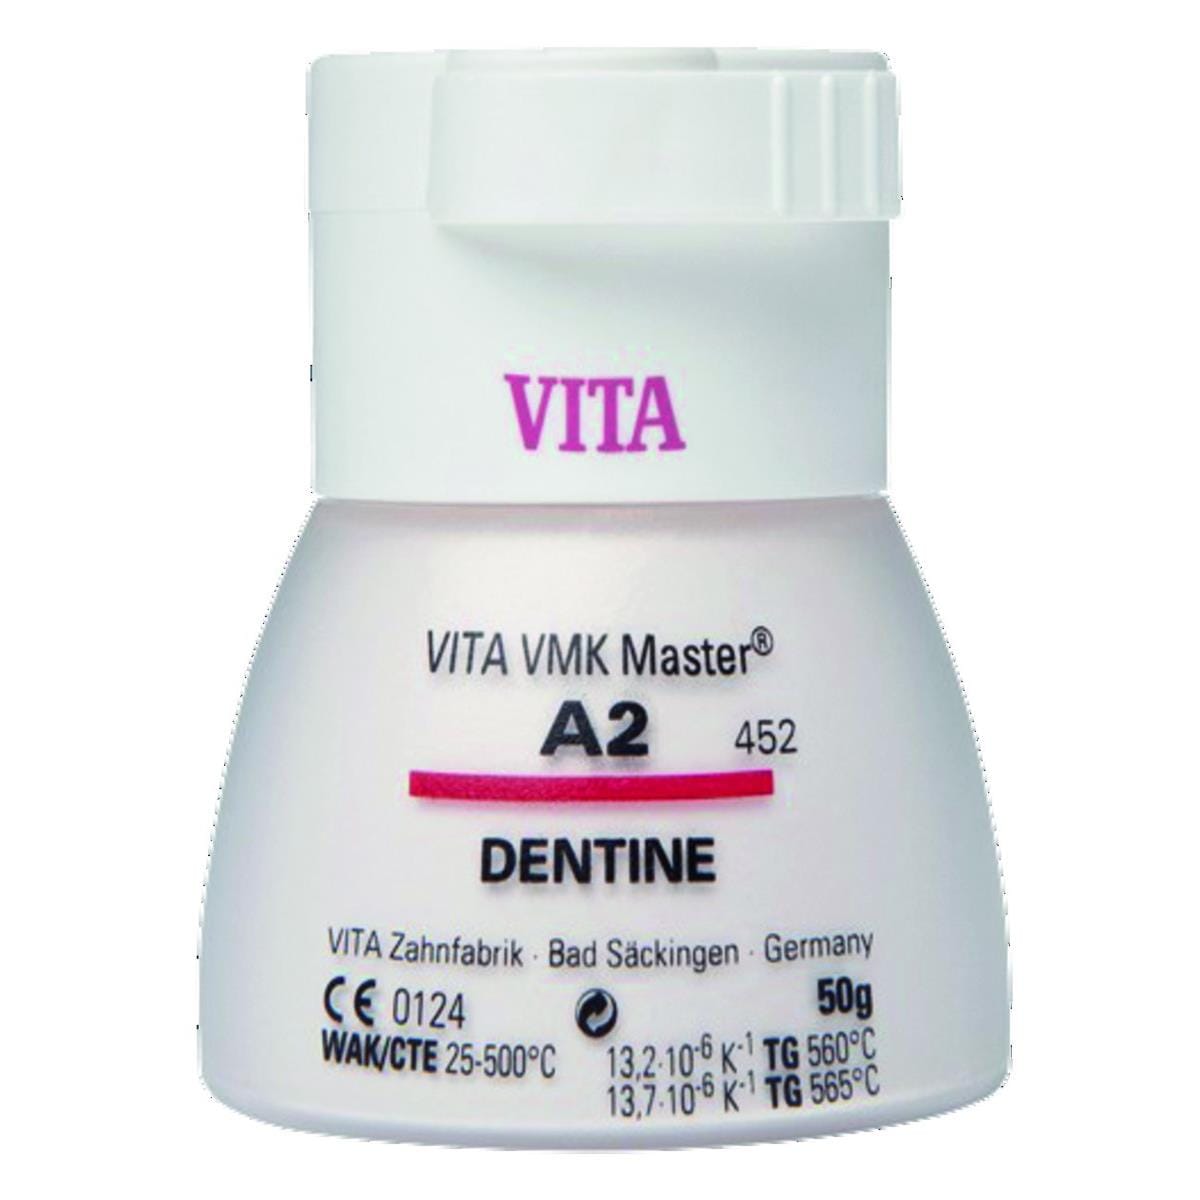 VMK Master VITA - Dentine - 4M3 - Le flacon de 50 g